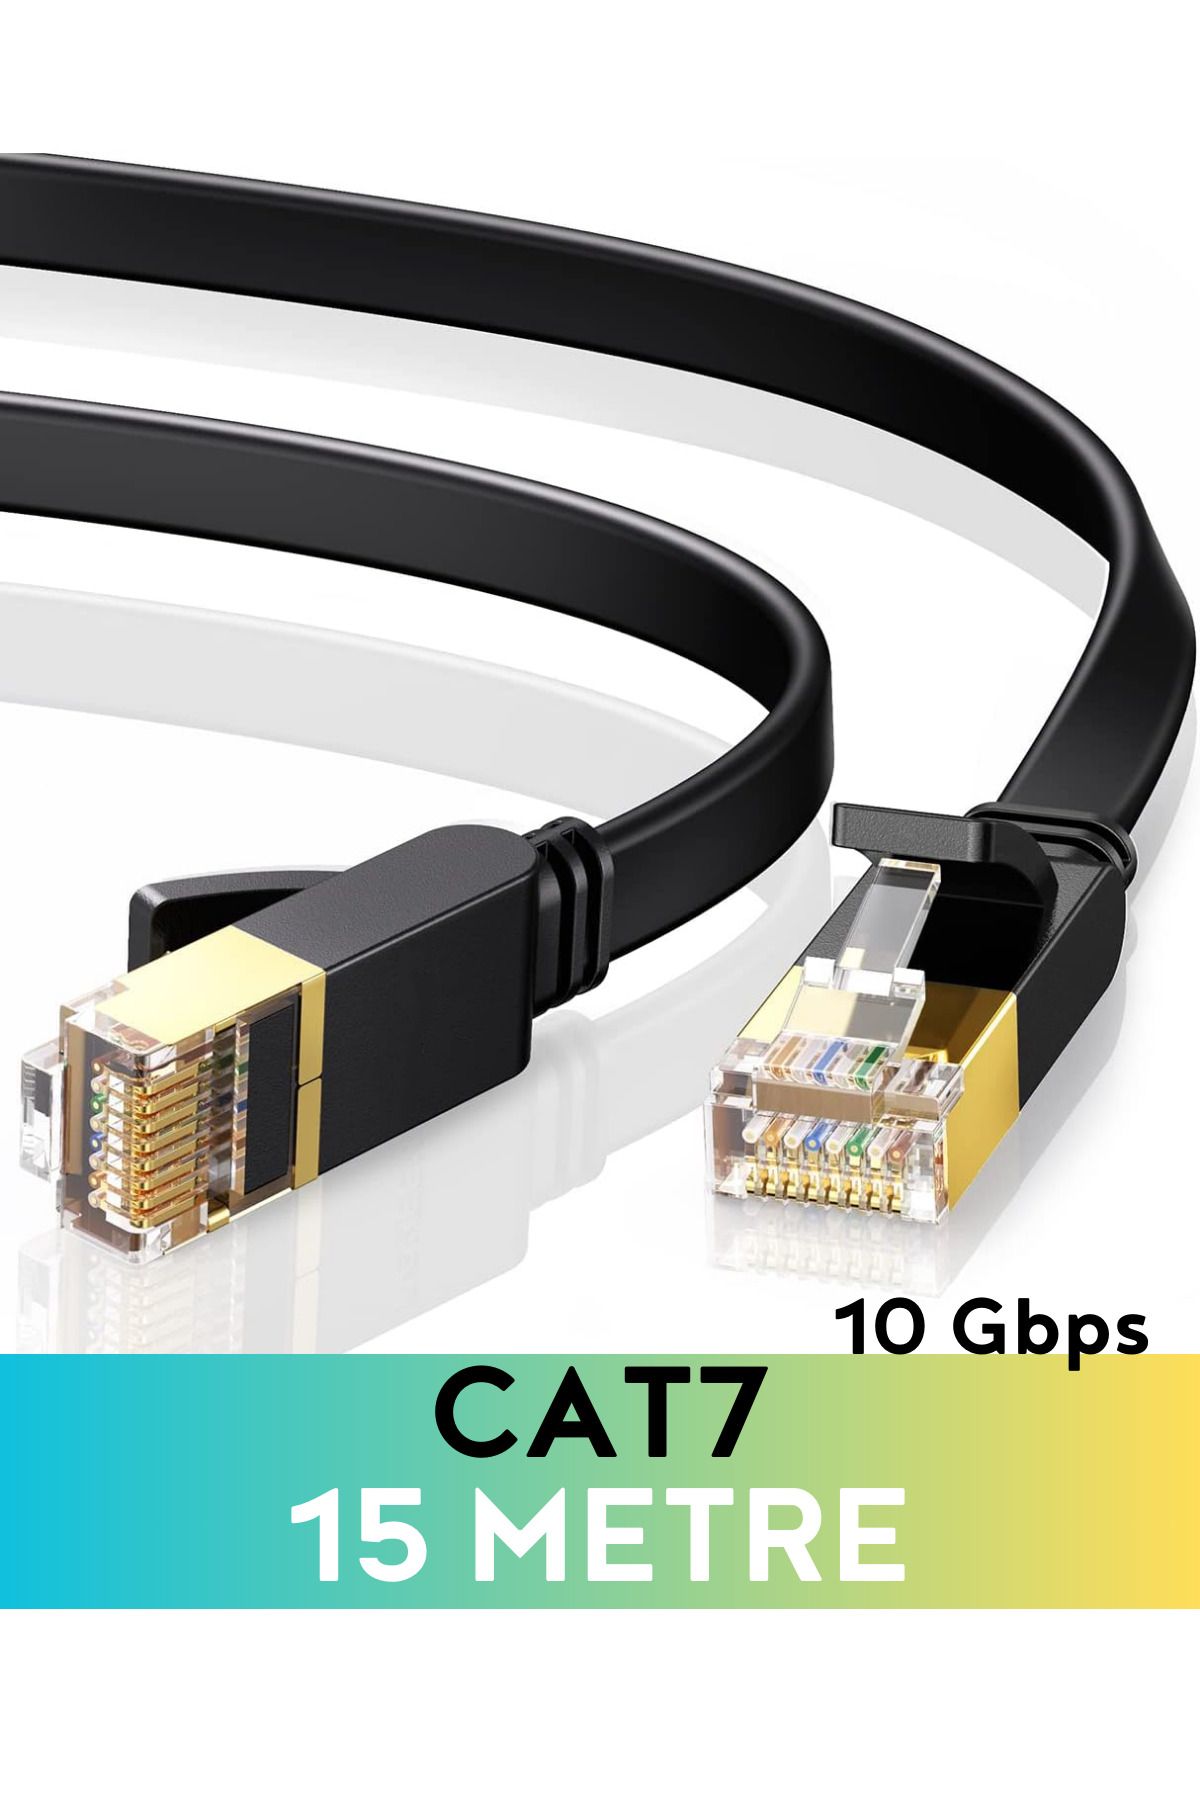 Vetech CAT7 15 Metre Ethernet Kablosu 10Gbps Premium İnternet Lan Kablo 15mt